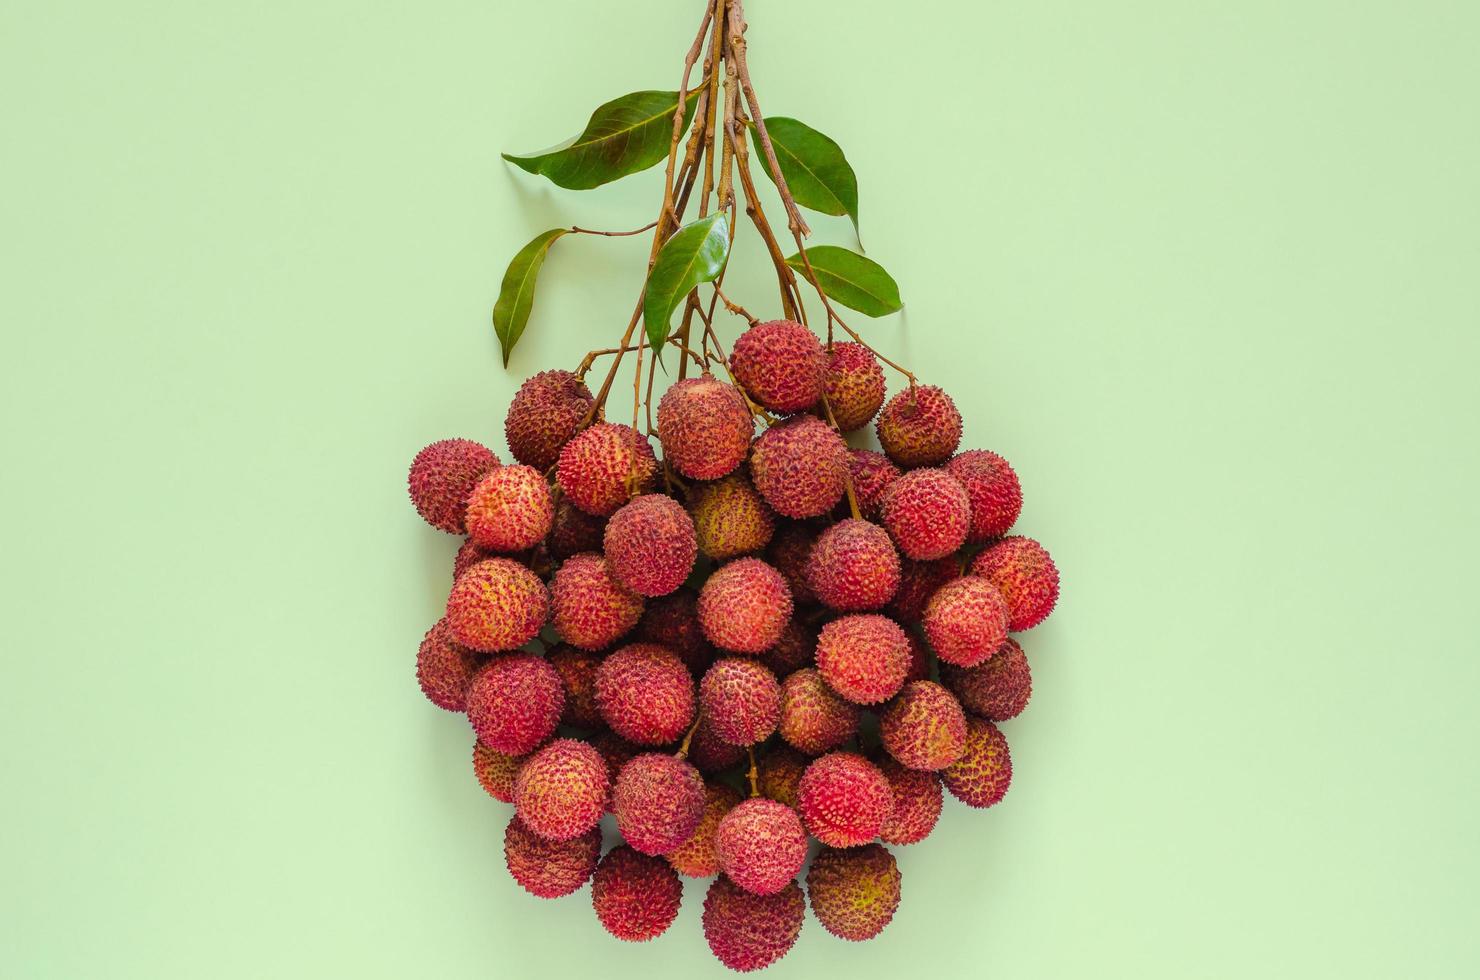 fruits de litchi frais avec tige et feuilles, fruits asiatiques exotiques sur fond rose. photo